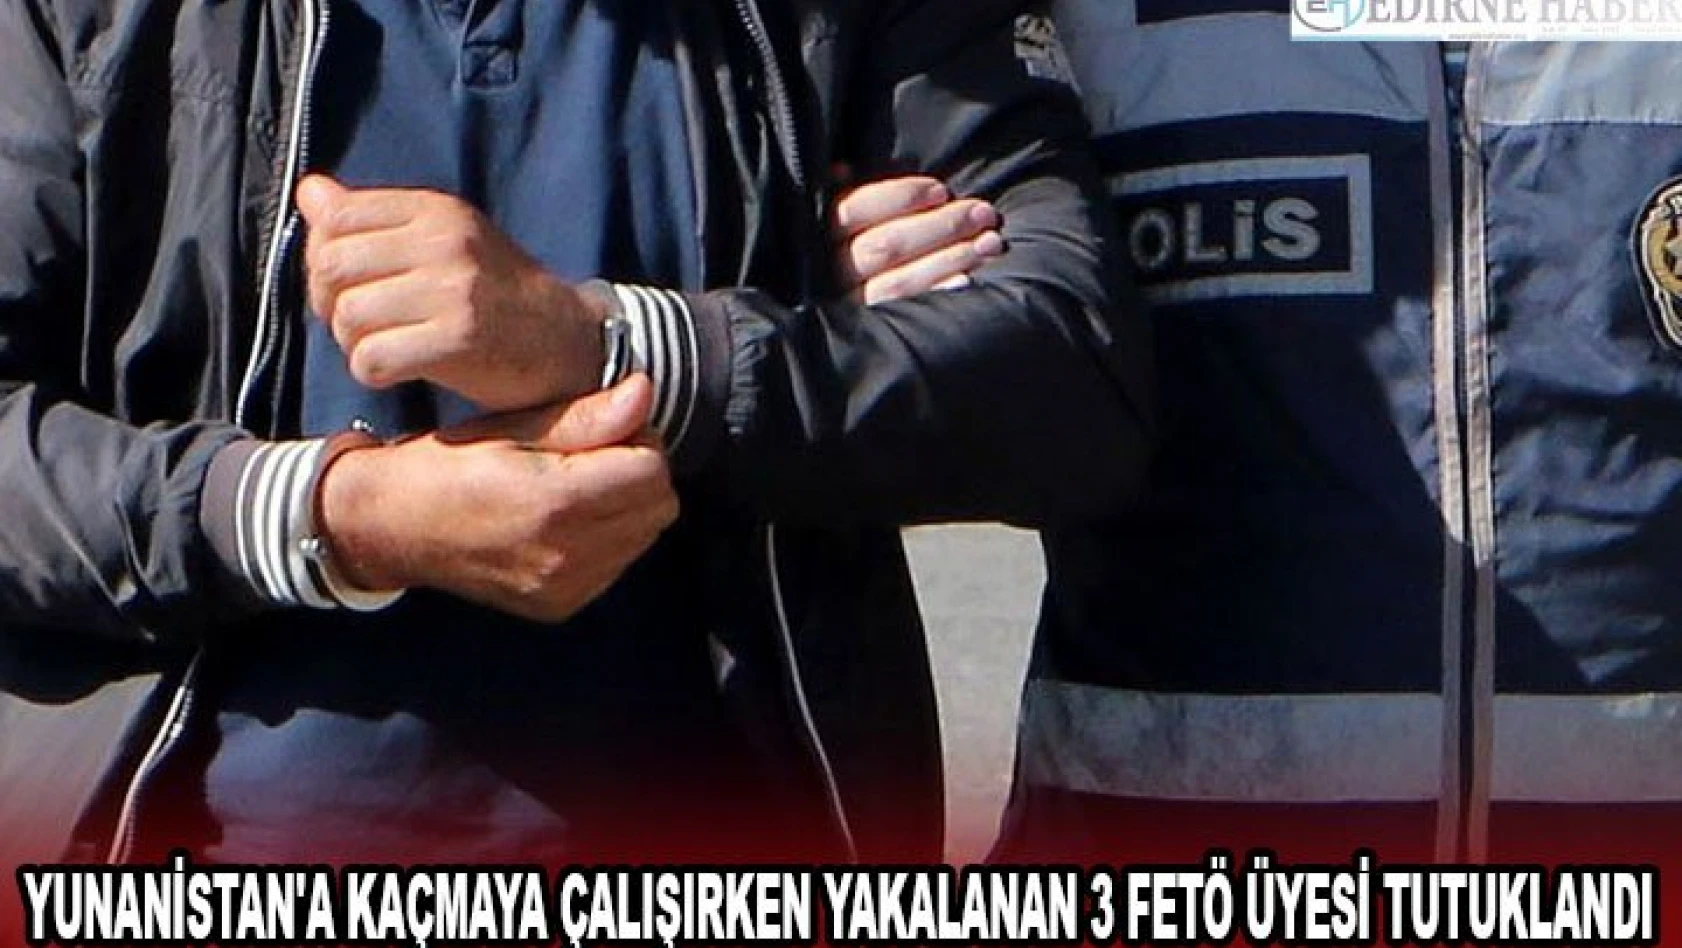 Yunanistan'a kaçmaya çalışırken yakalanan 3 FETÖ üyesi tutuklandı